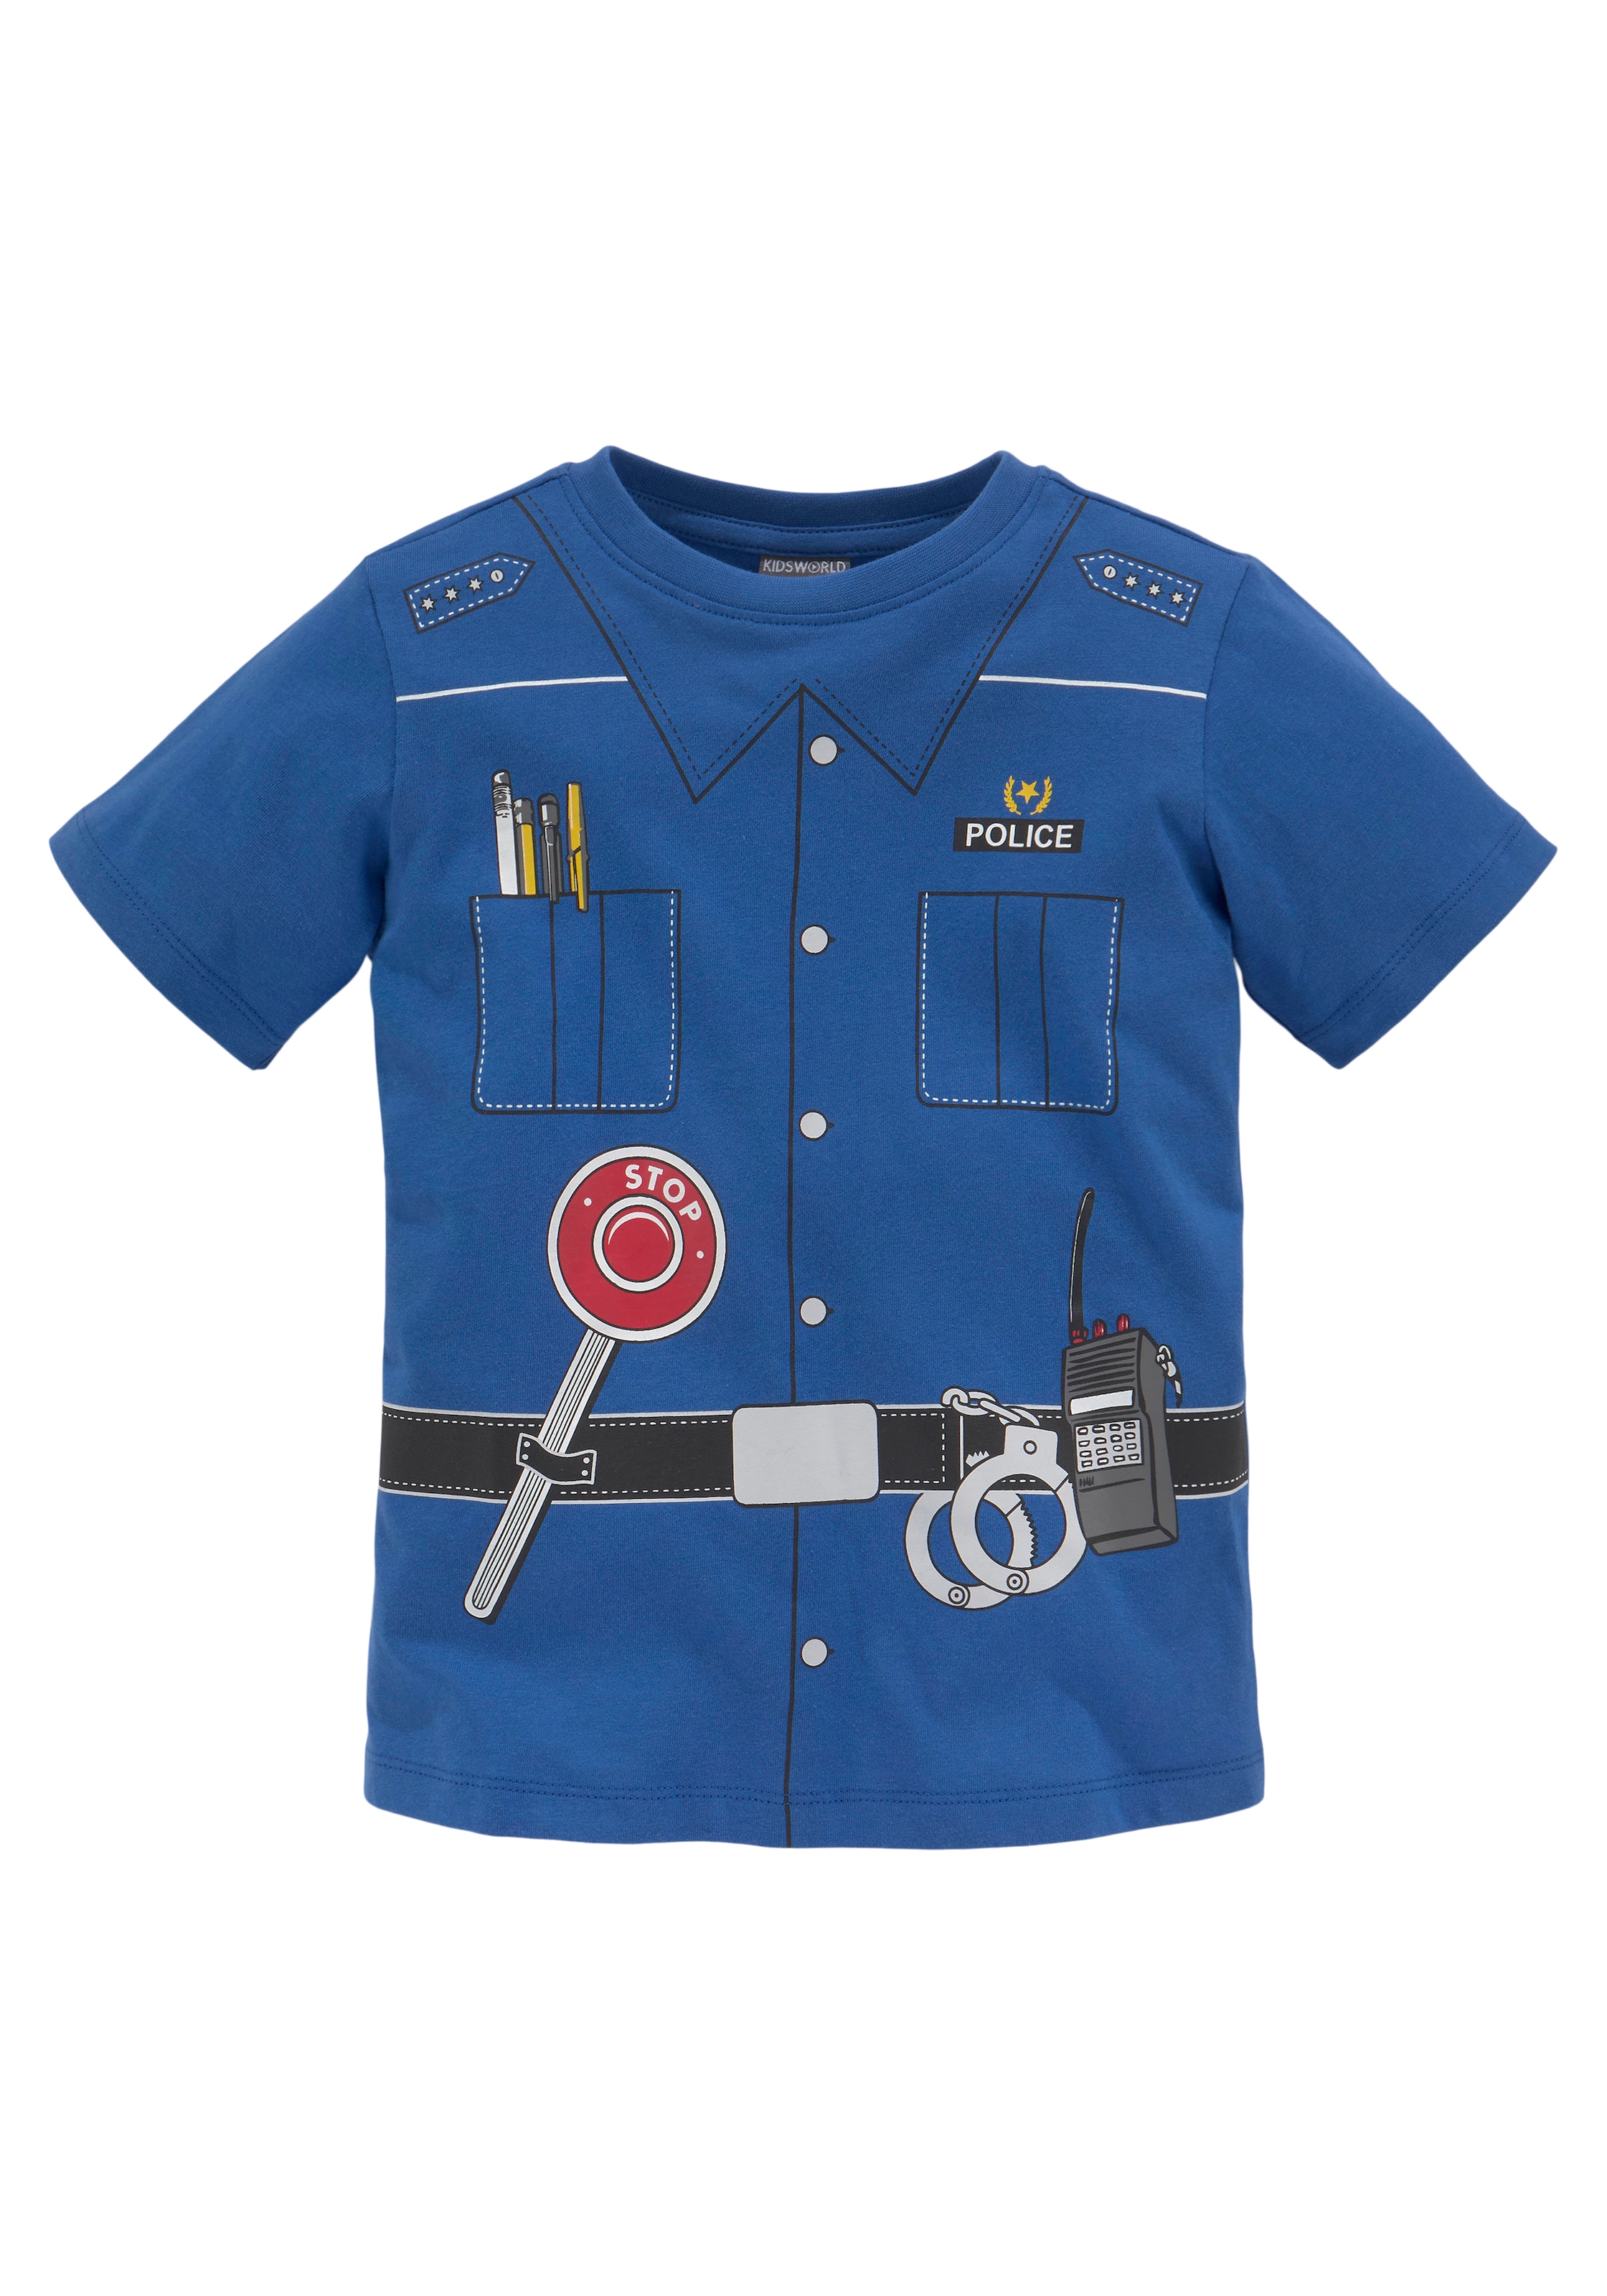 KIDSWORLD Druck »POLIZEI«, auf versandkostenfrei Uniform T-Shirt